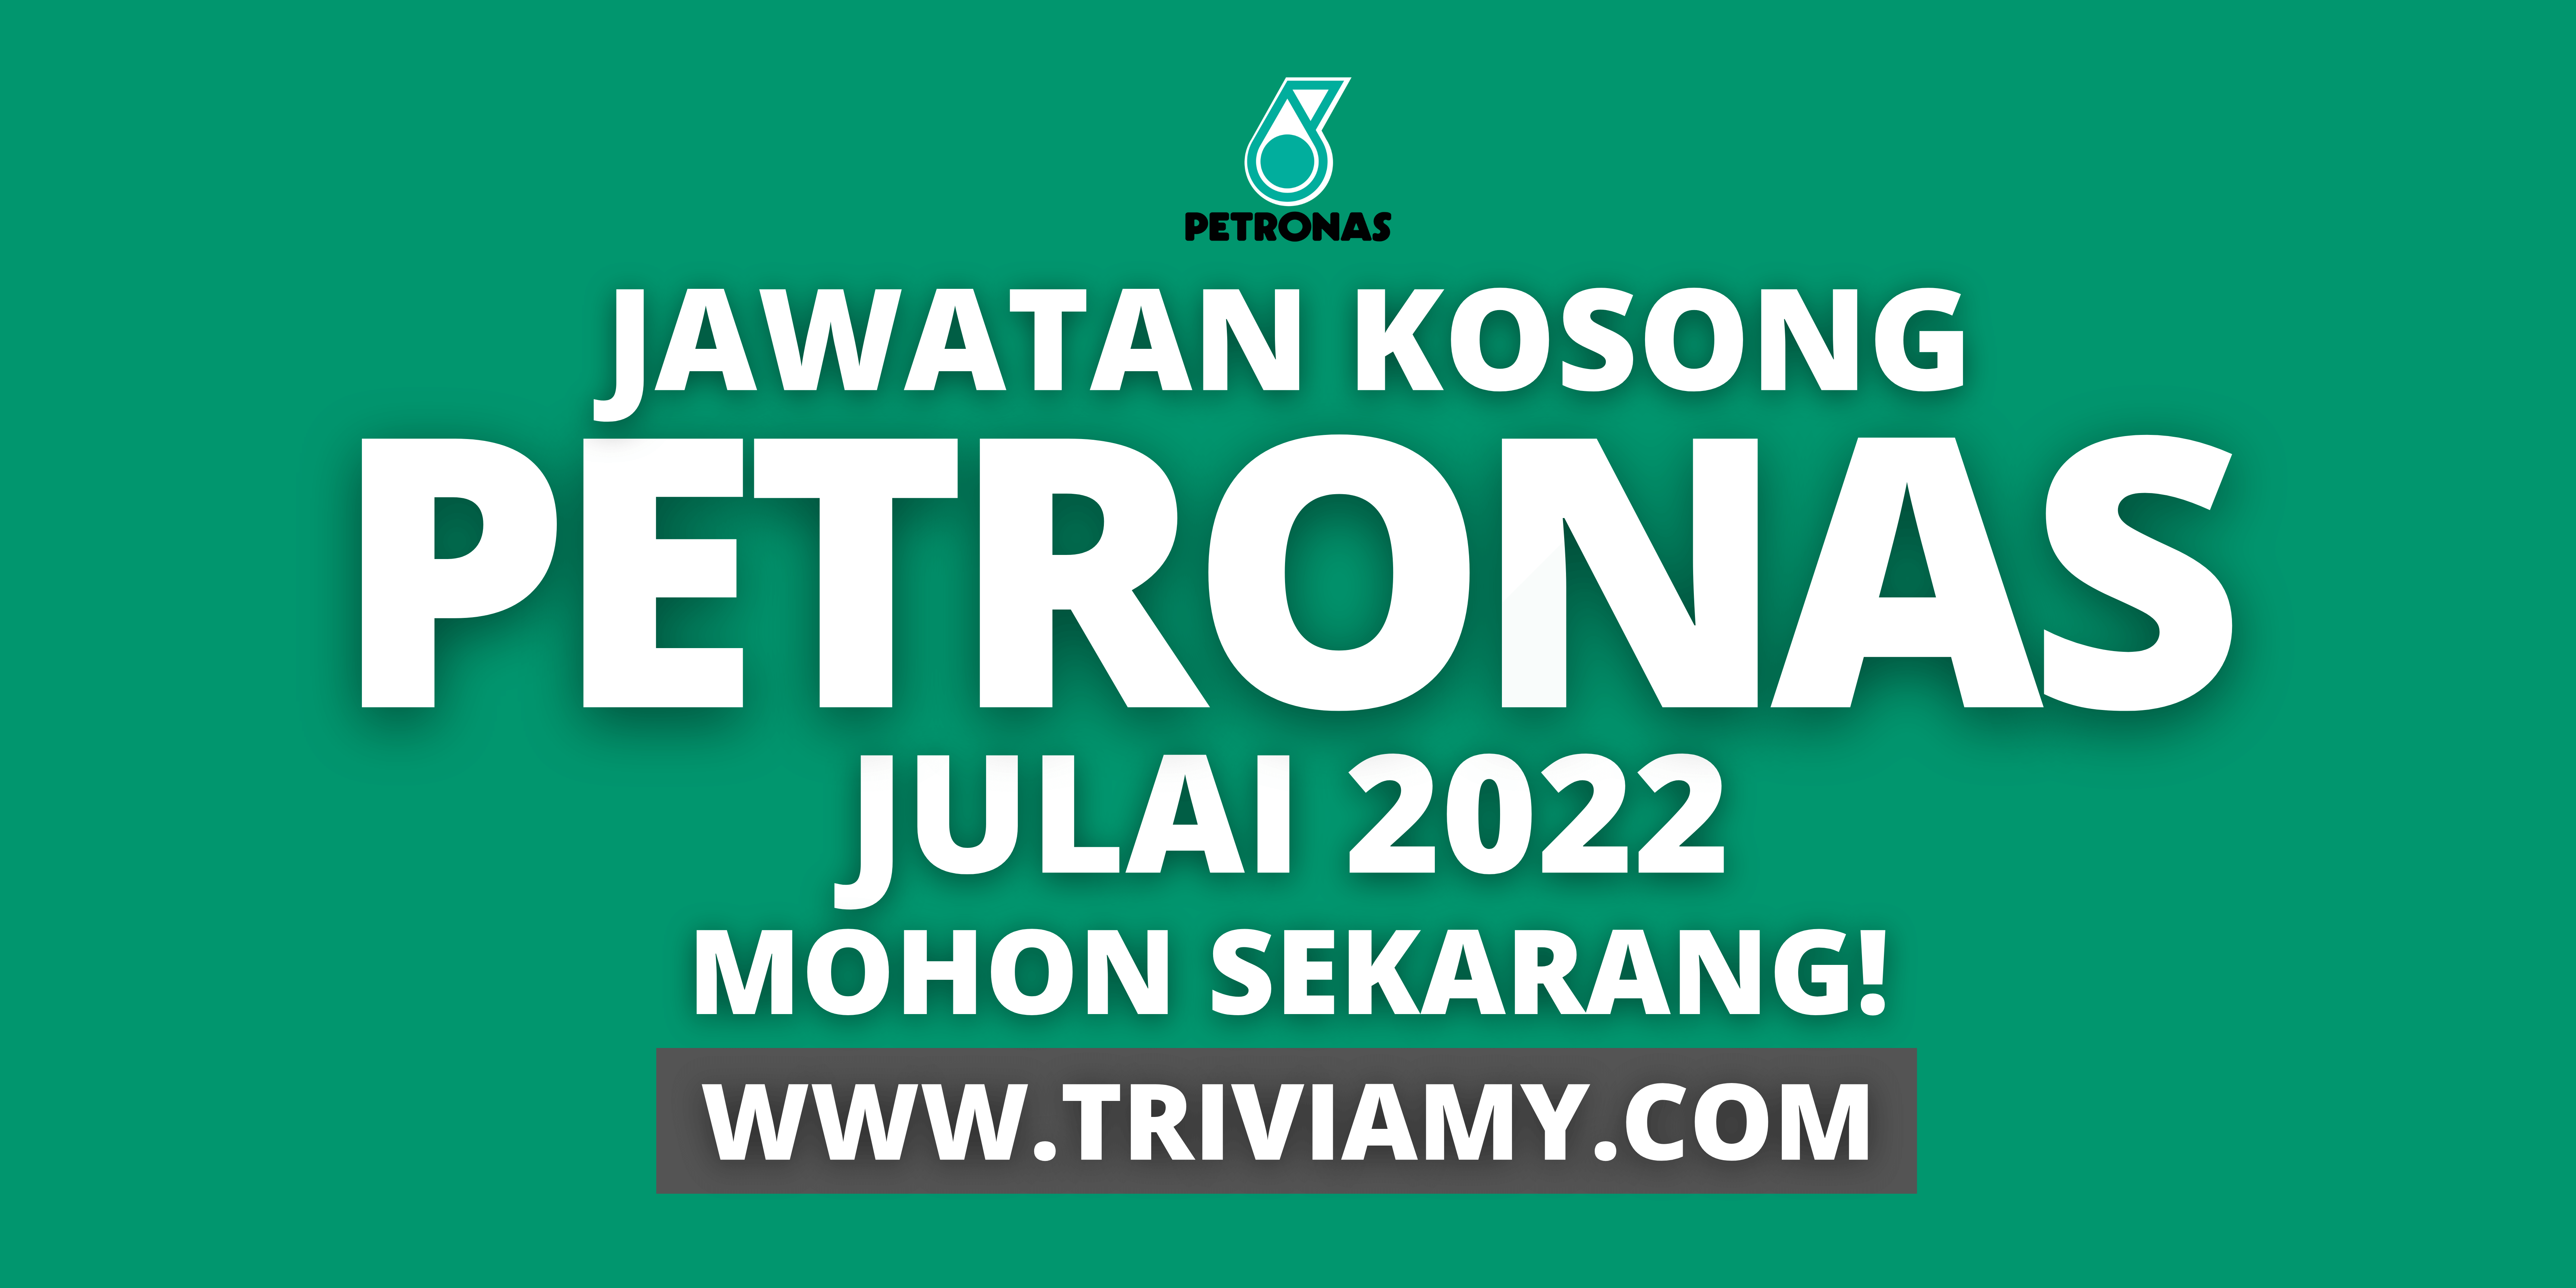 Jawatan Kosong Petronas 1